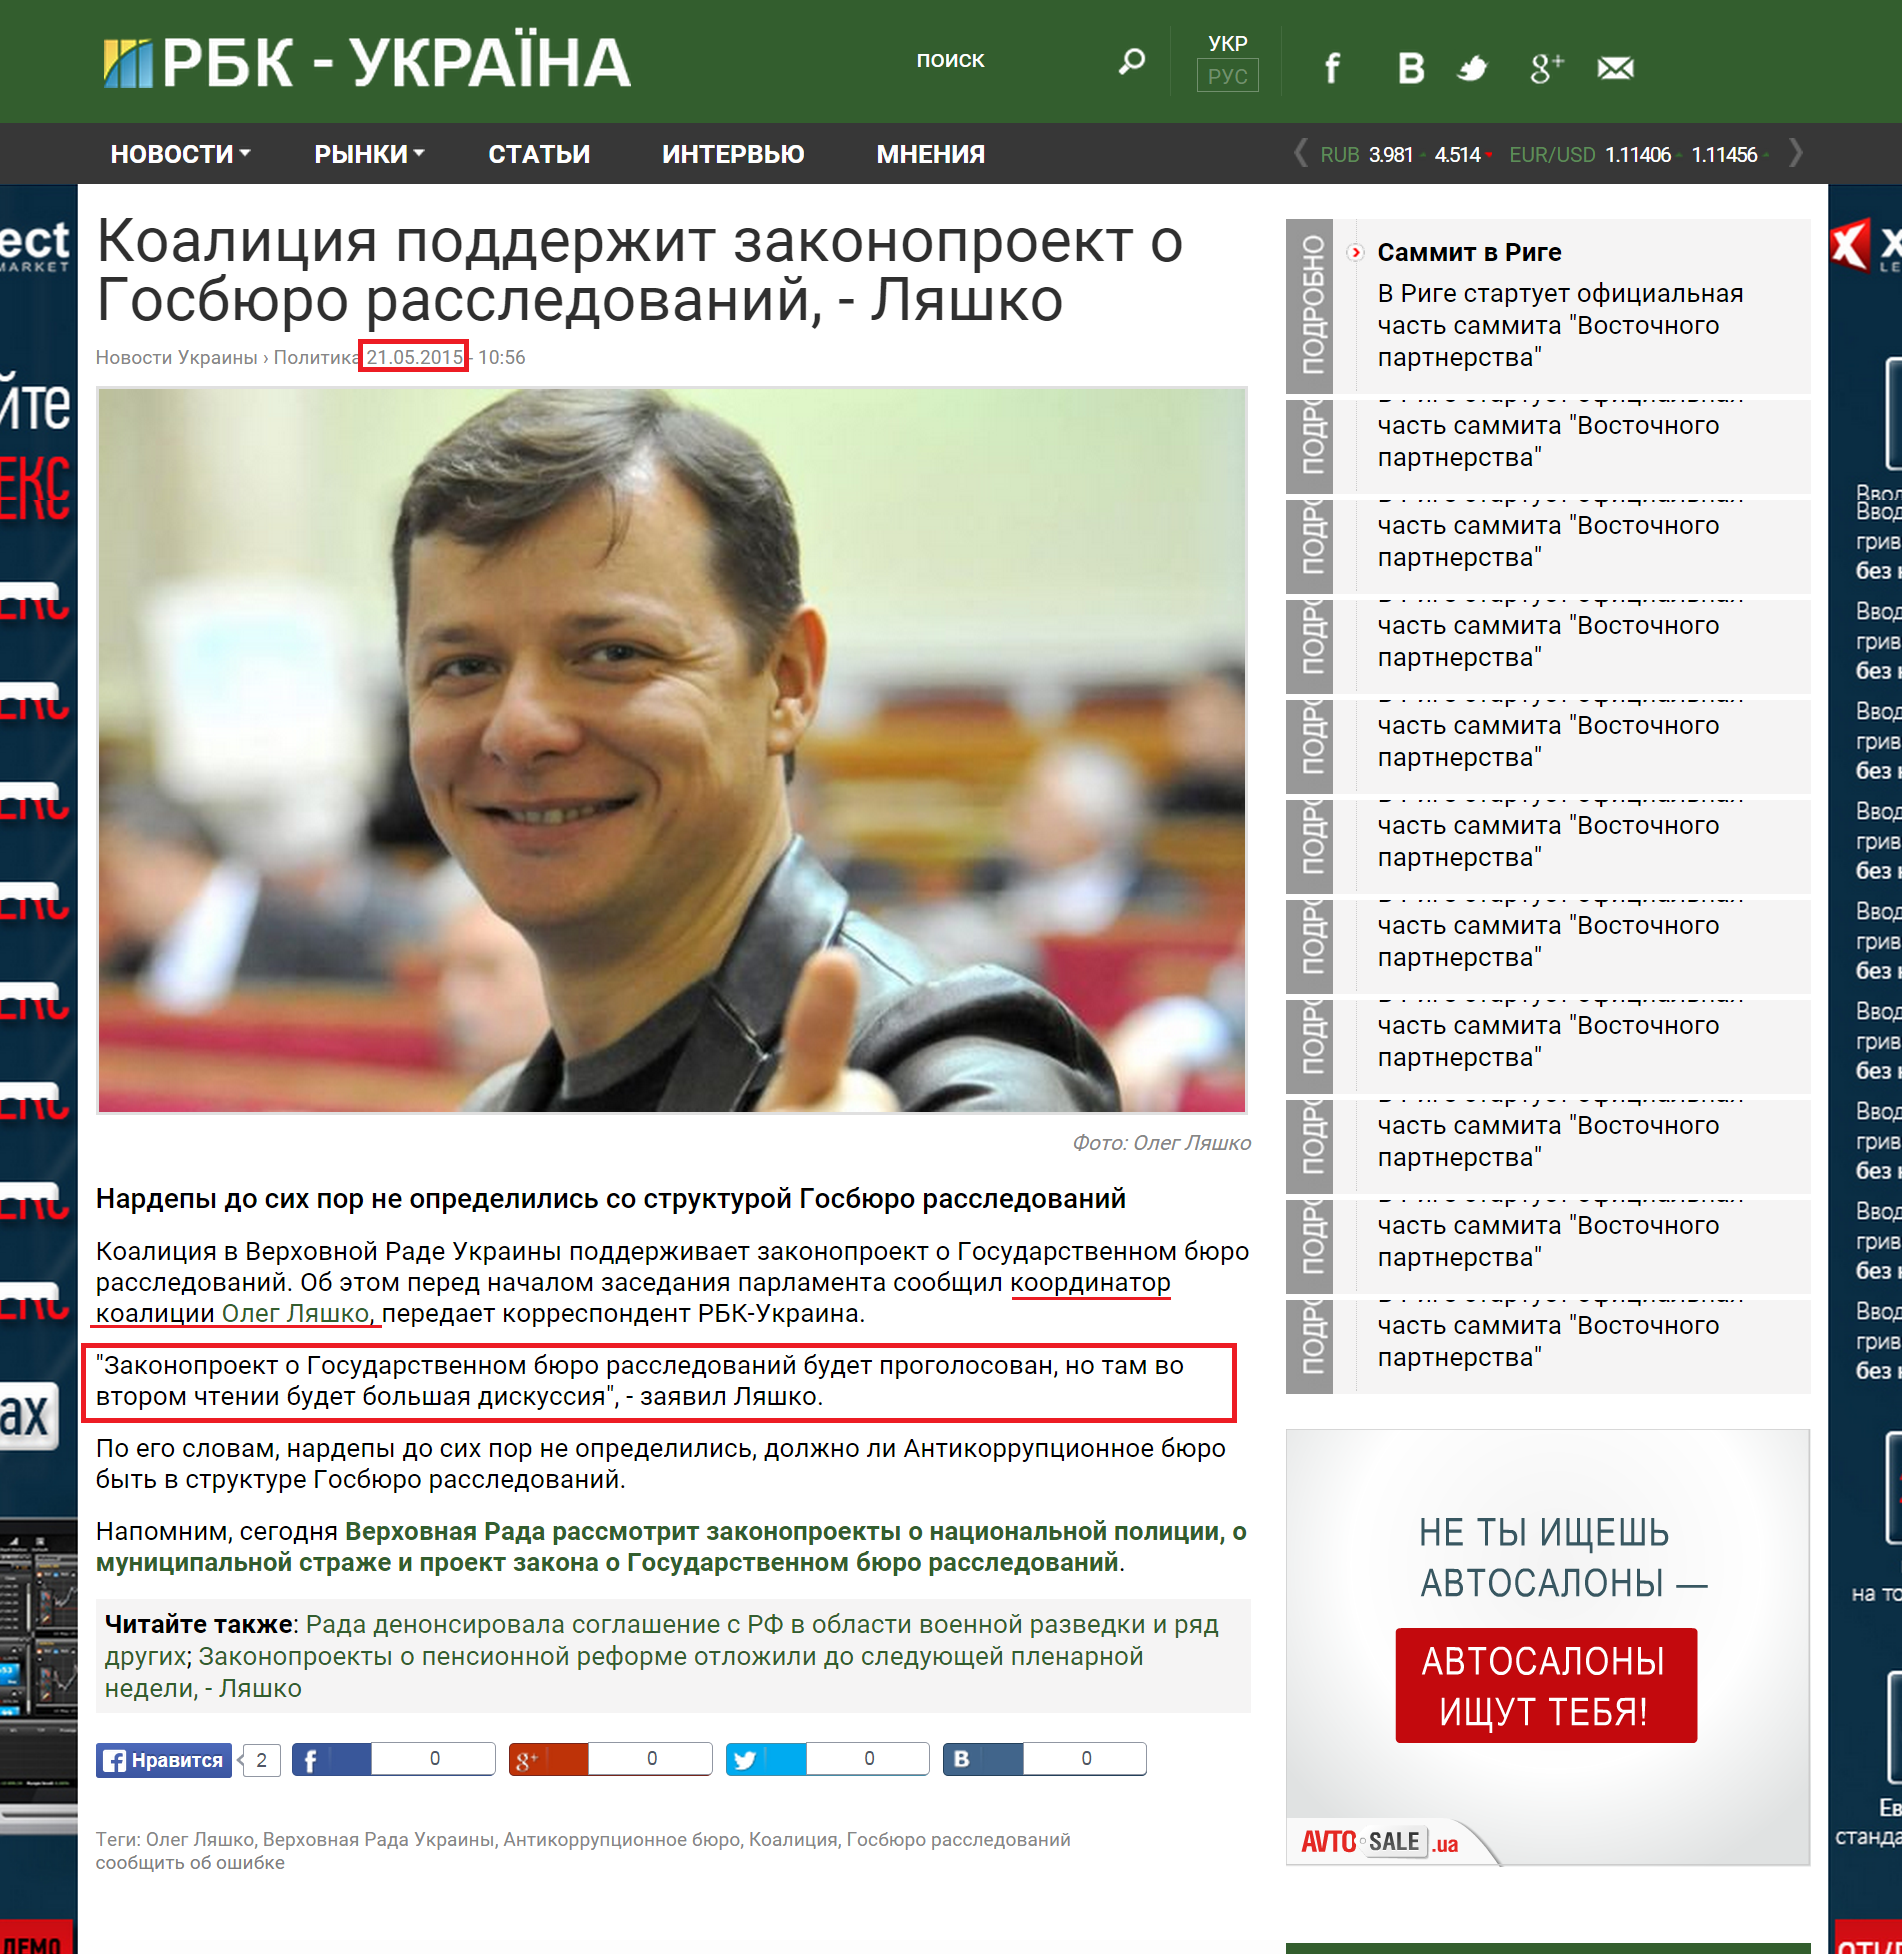 http://www.rbc.ua/rus/news/koalitsiya-podderzhit-zakonoproekt-gosbyuro-1432194954.html